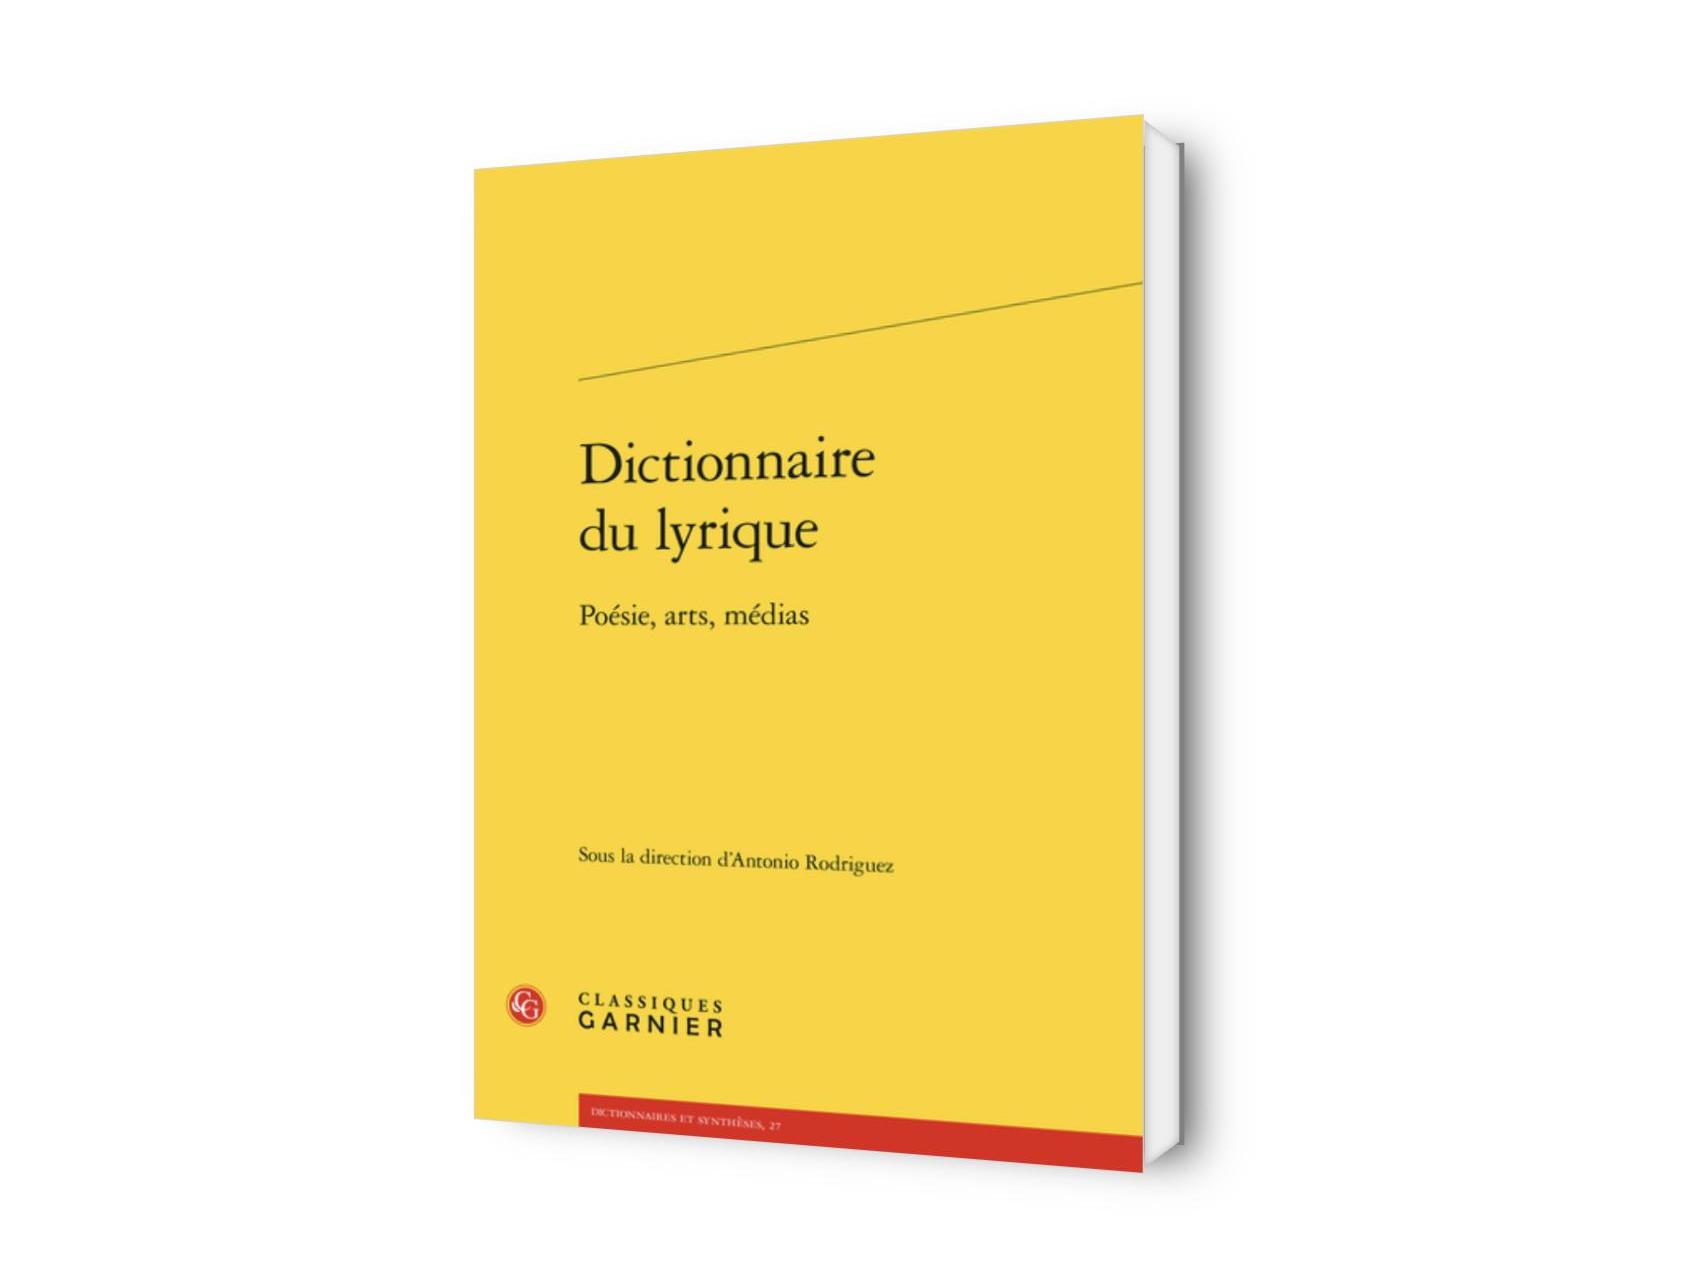 Dictionnaire du lyrique. Poésie, arts, médias